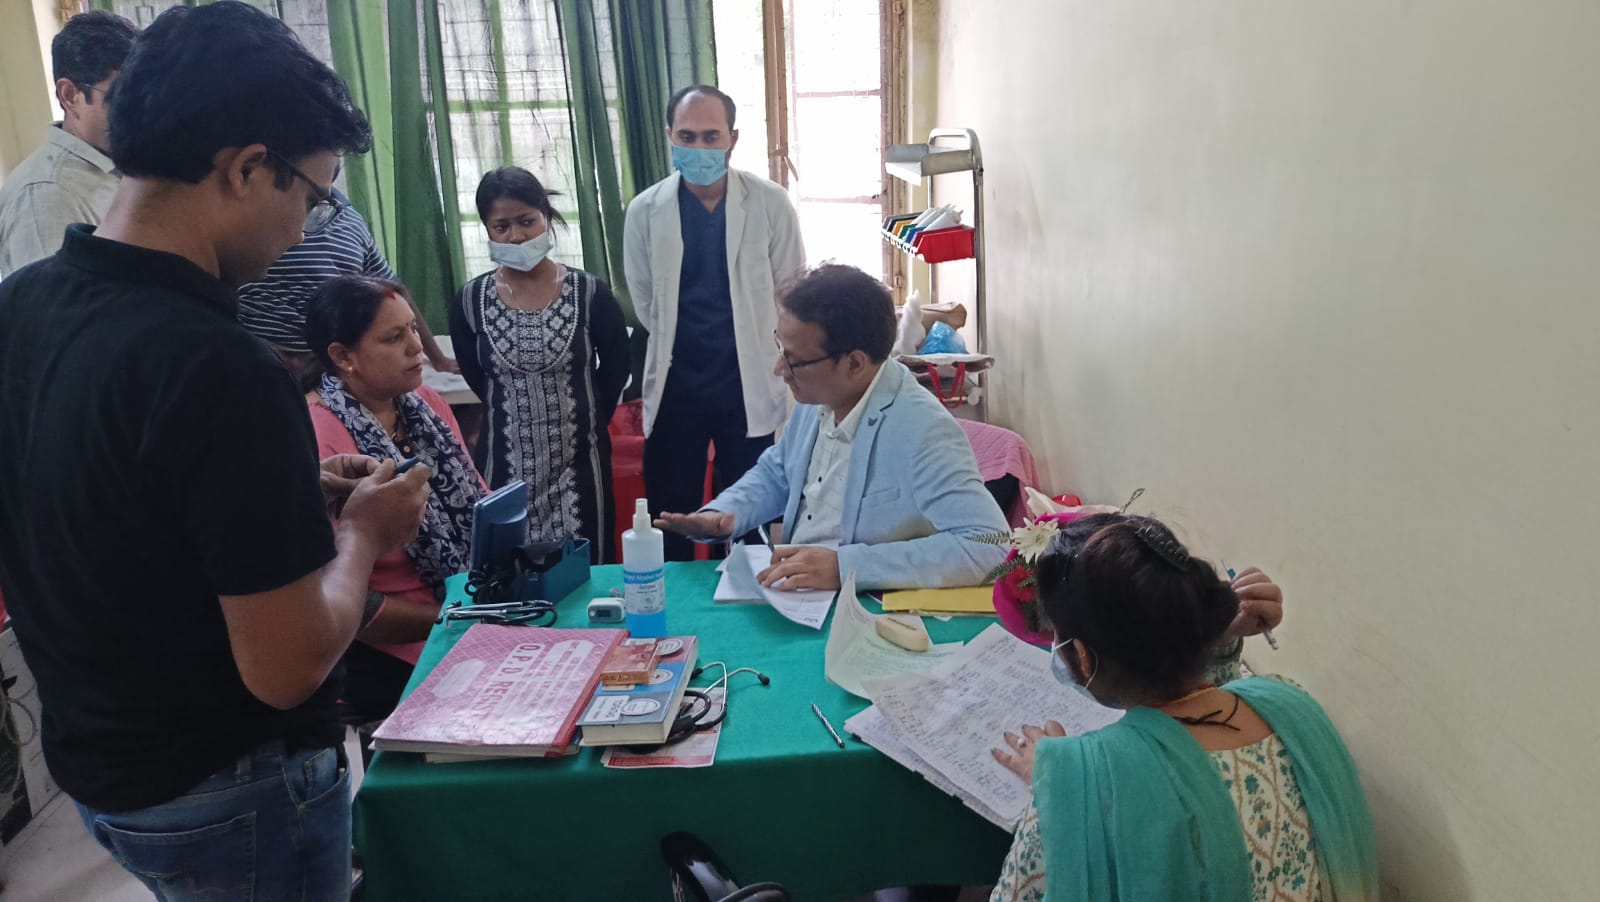 श्रीनगर बेस अस्पताल में आयोजित हृदय रोग जांच शिविर का 64 मरीजों ने उठाया लाभ